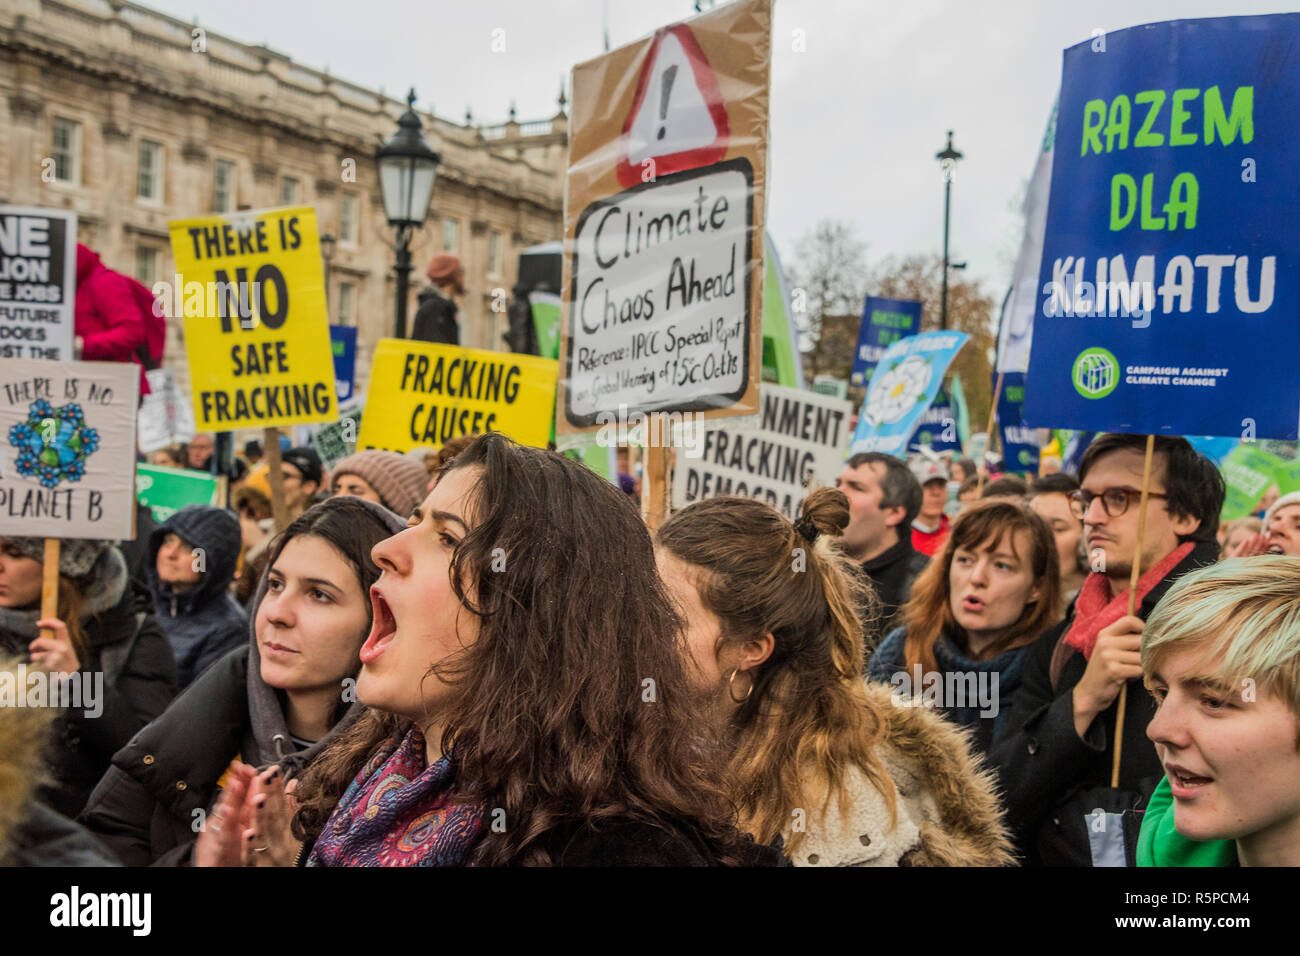 Londra, Regno Unito. Il 1 dicembre del 2018. La campagna contro il cambiamento climatico insieme con i membri di estinzione della ribellione unirsi ad altri gruppi per protestare contro ciò che vedono come un'imminente cambiamento climatico catastrofe e il collasso ecologico e contro fracking e l'espansione dell'aeroporto di Heathrow. Credito: Guy Bell/Alamy Live News Foto Stock